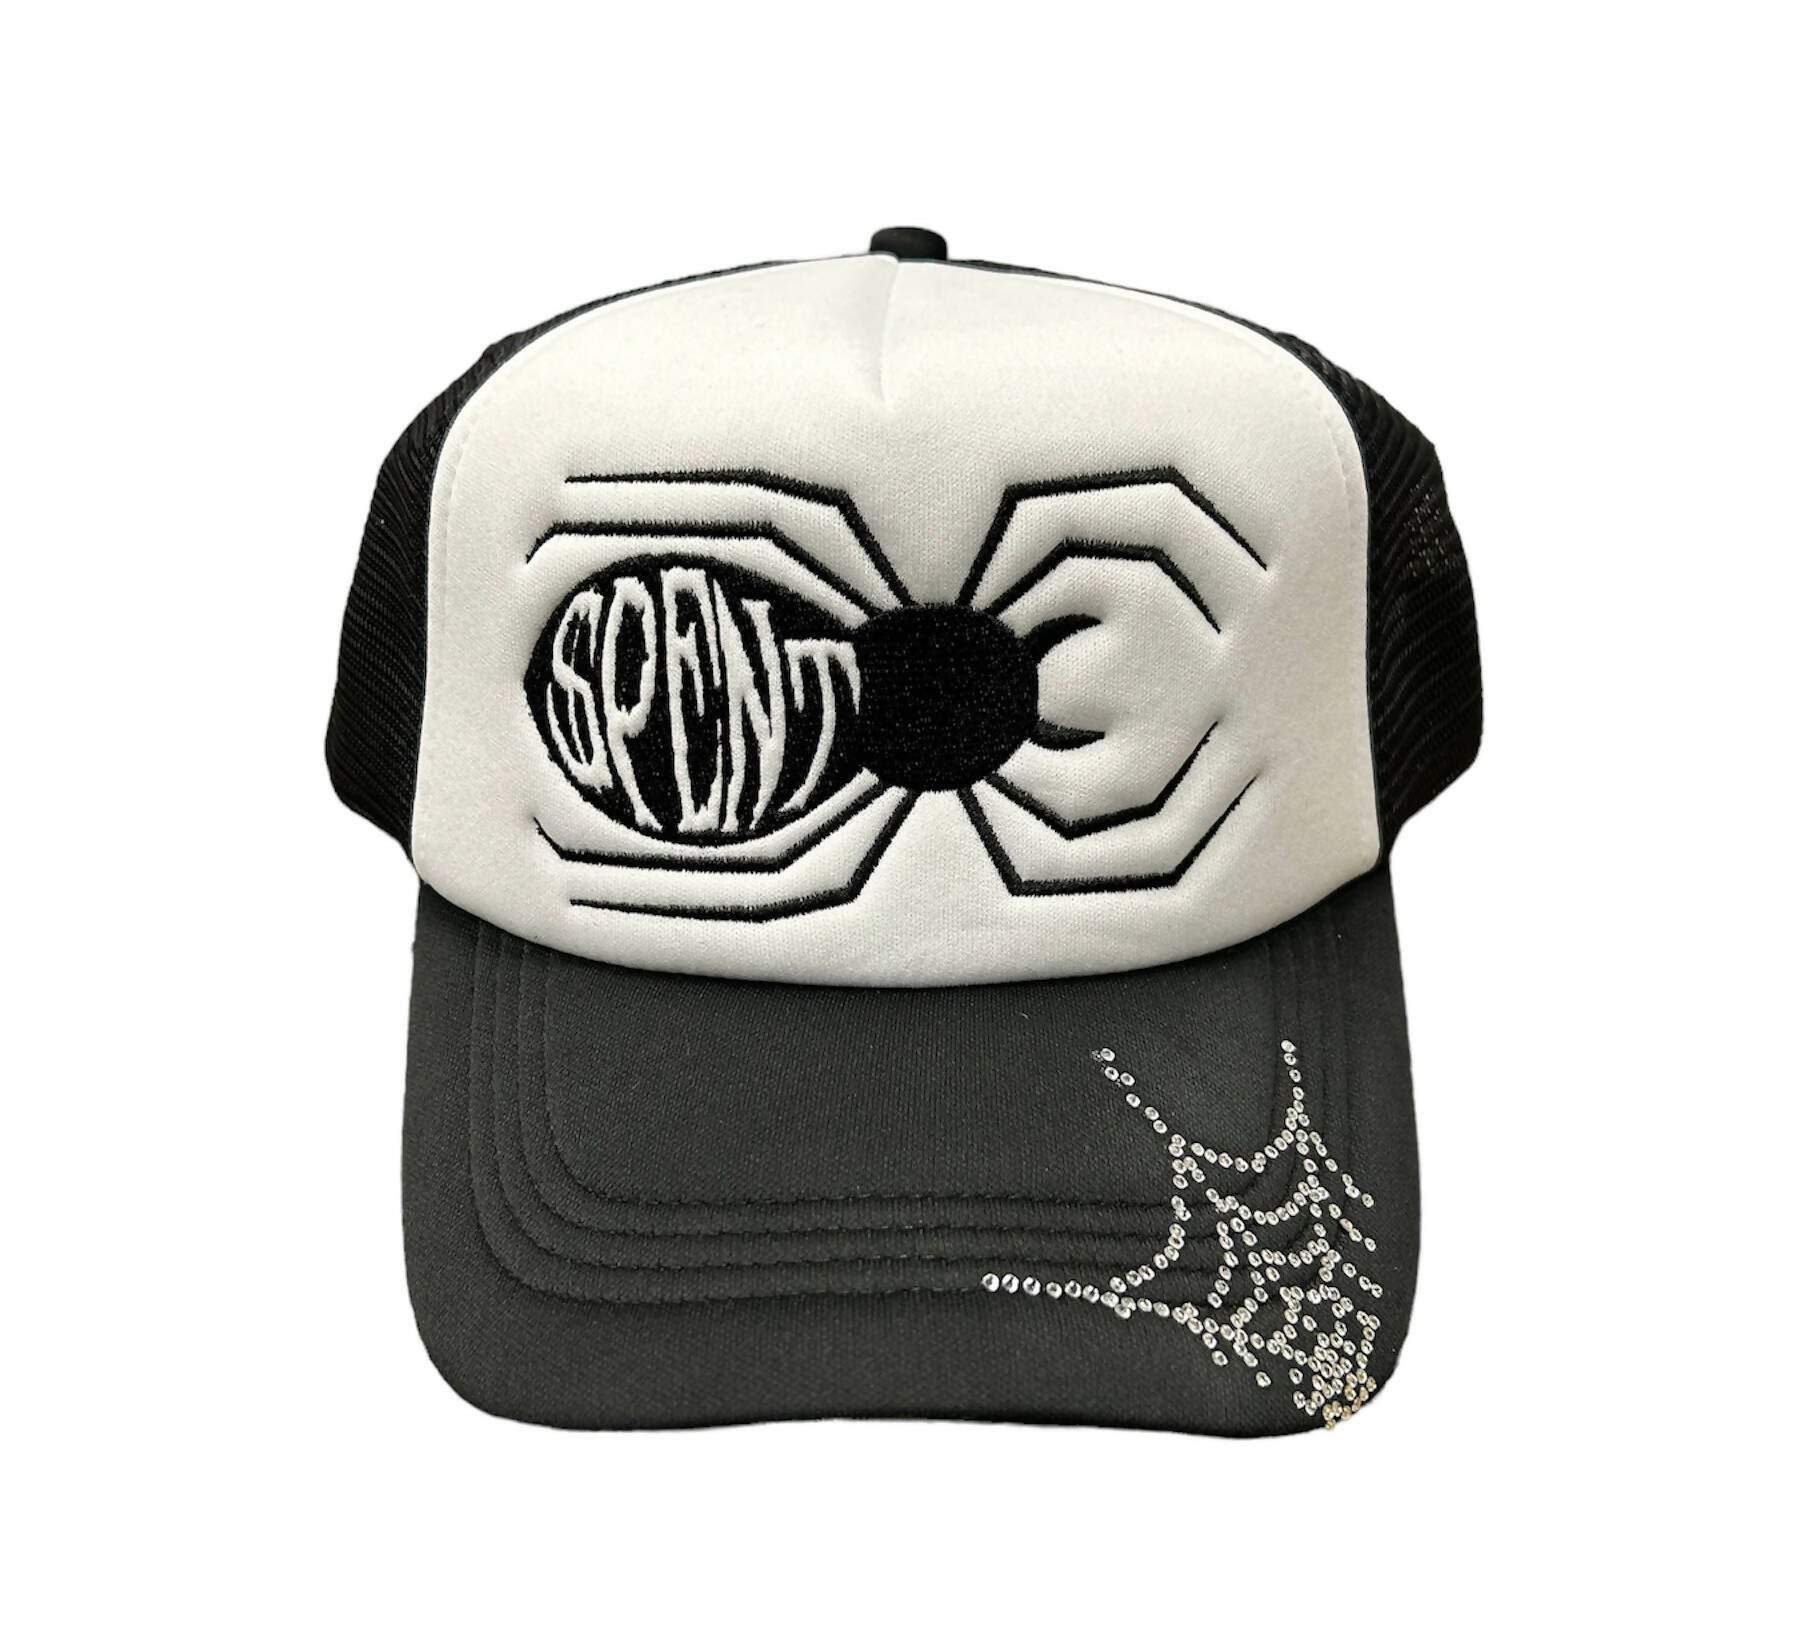 OG “$pider” Trucker hat